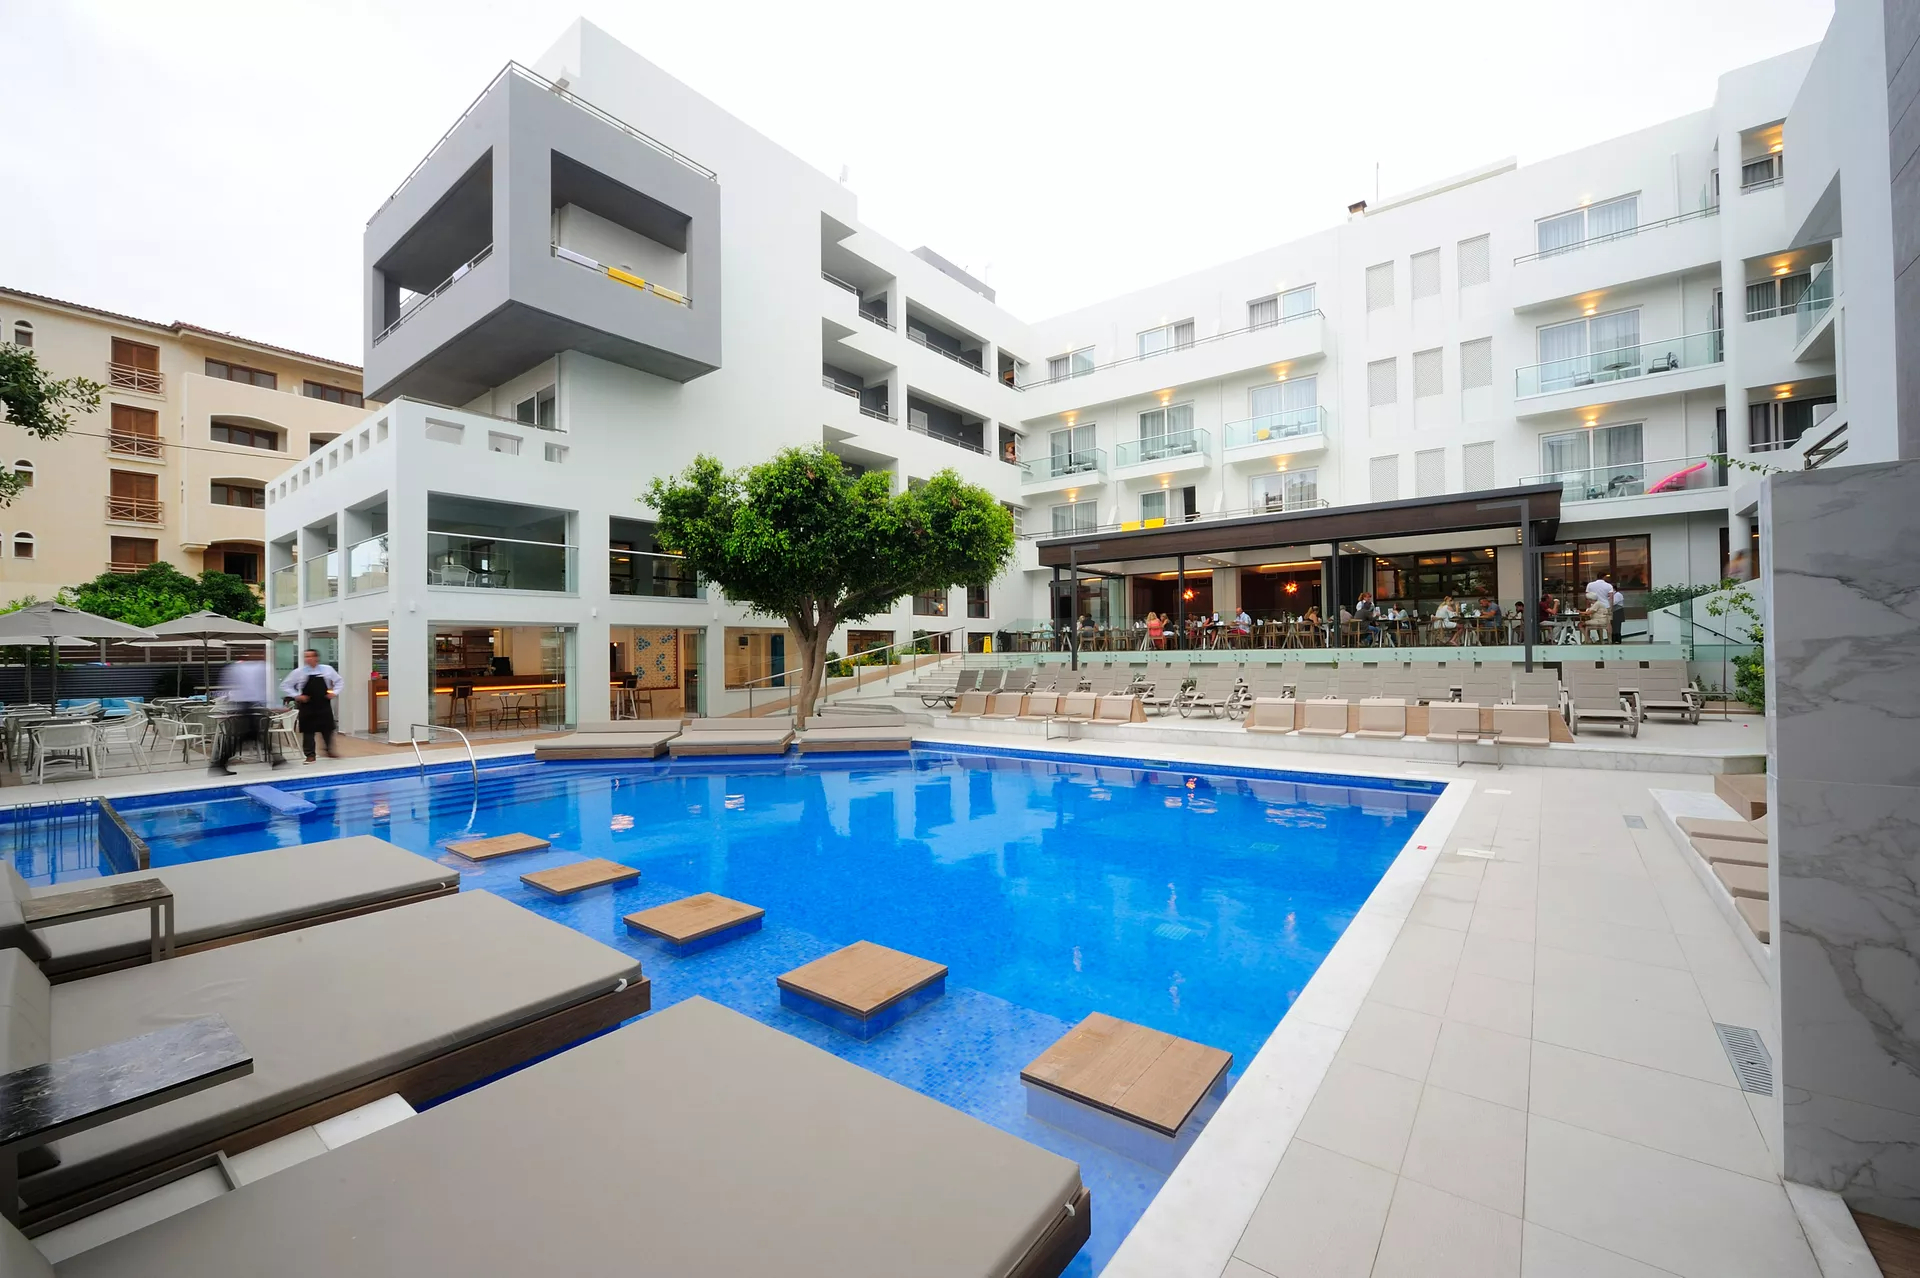 4* Atrium Ambiance Hotel - Ρέθυμνο, Κρήτη ✦ -19% ✦